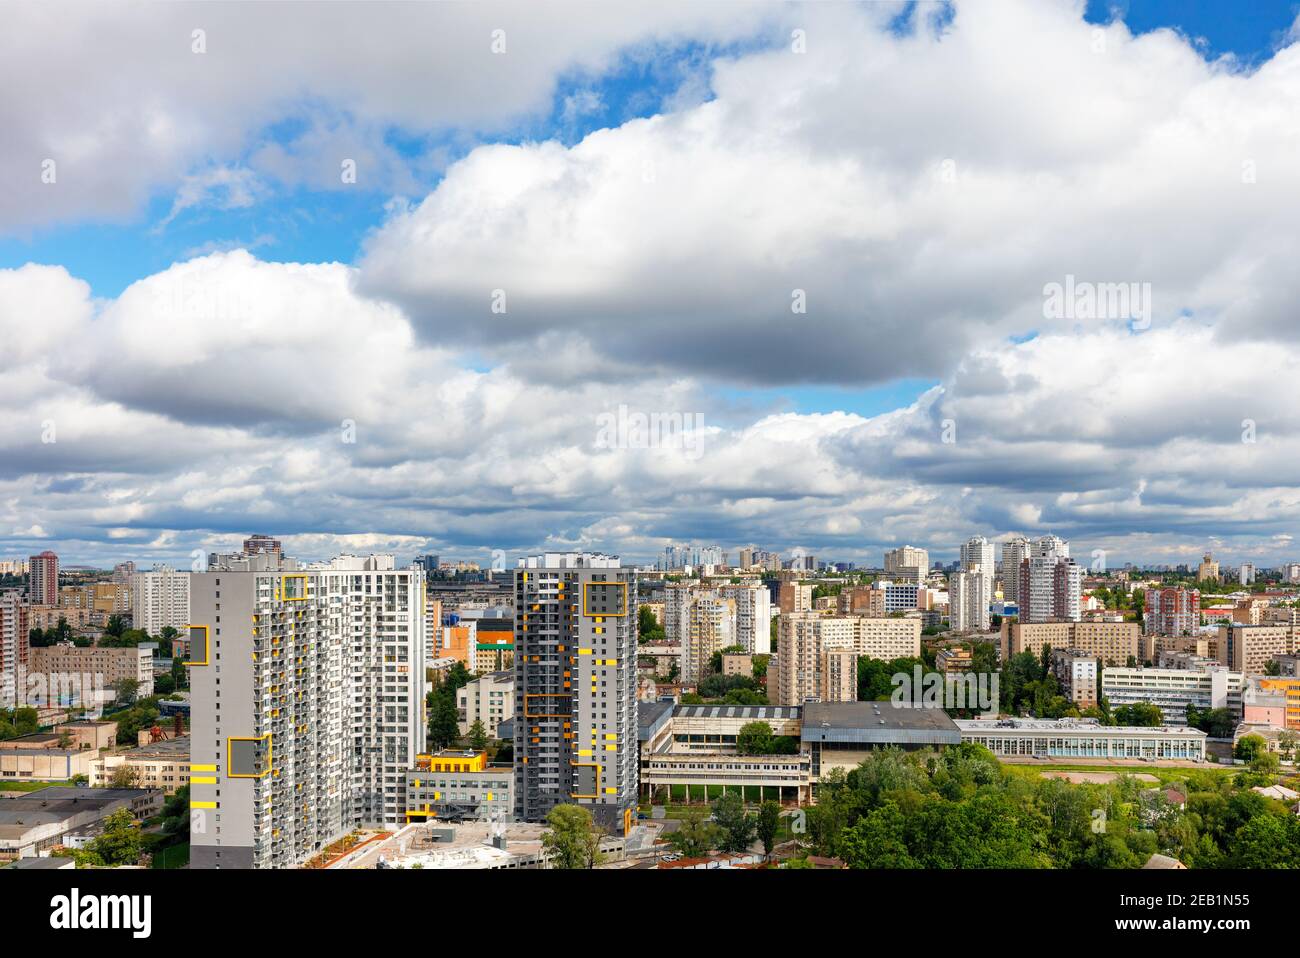 Un paesaggio urbano con architettura alta e bassa sotto un bel cielo drammatico con dense nuvole spesse. Foto Stock